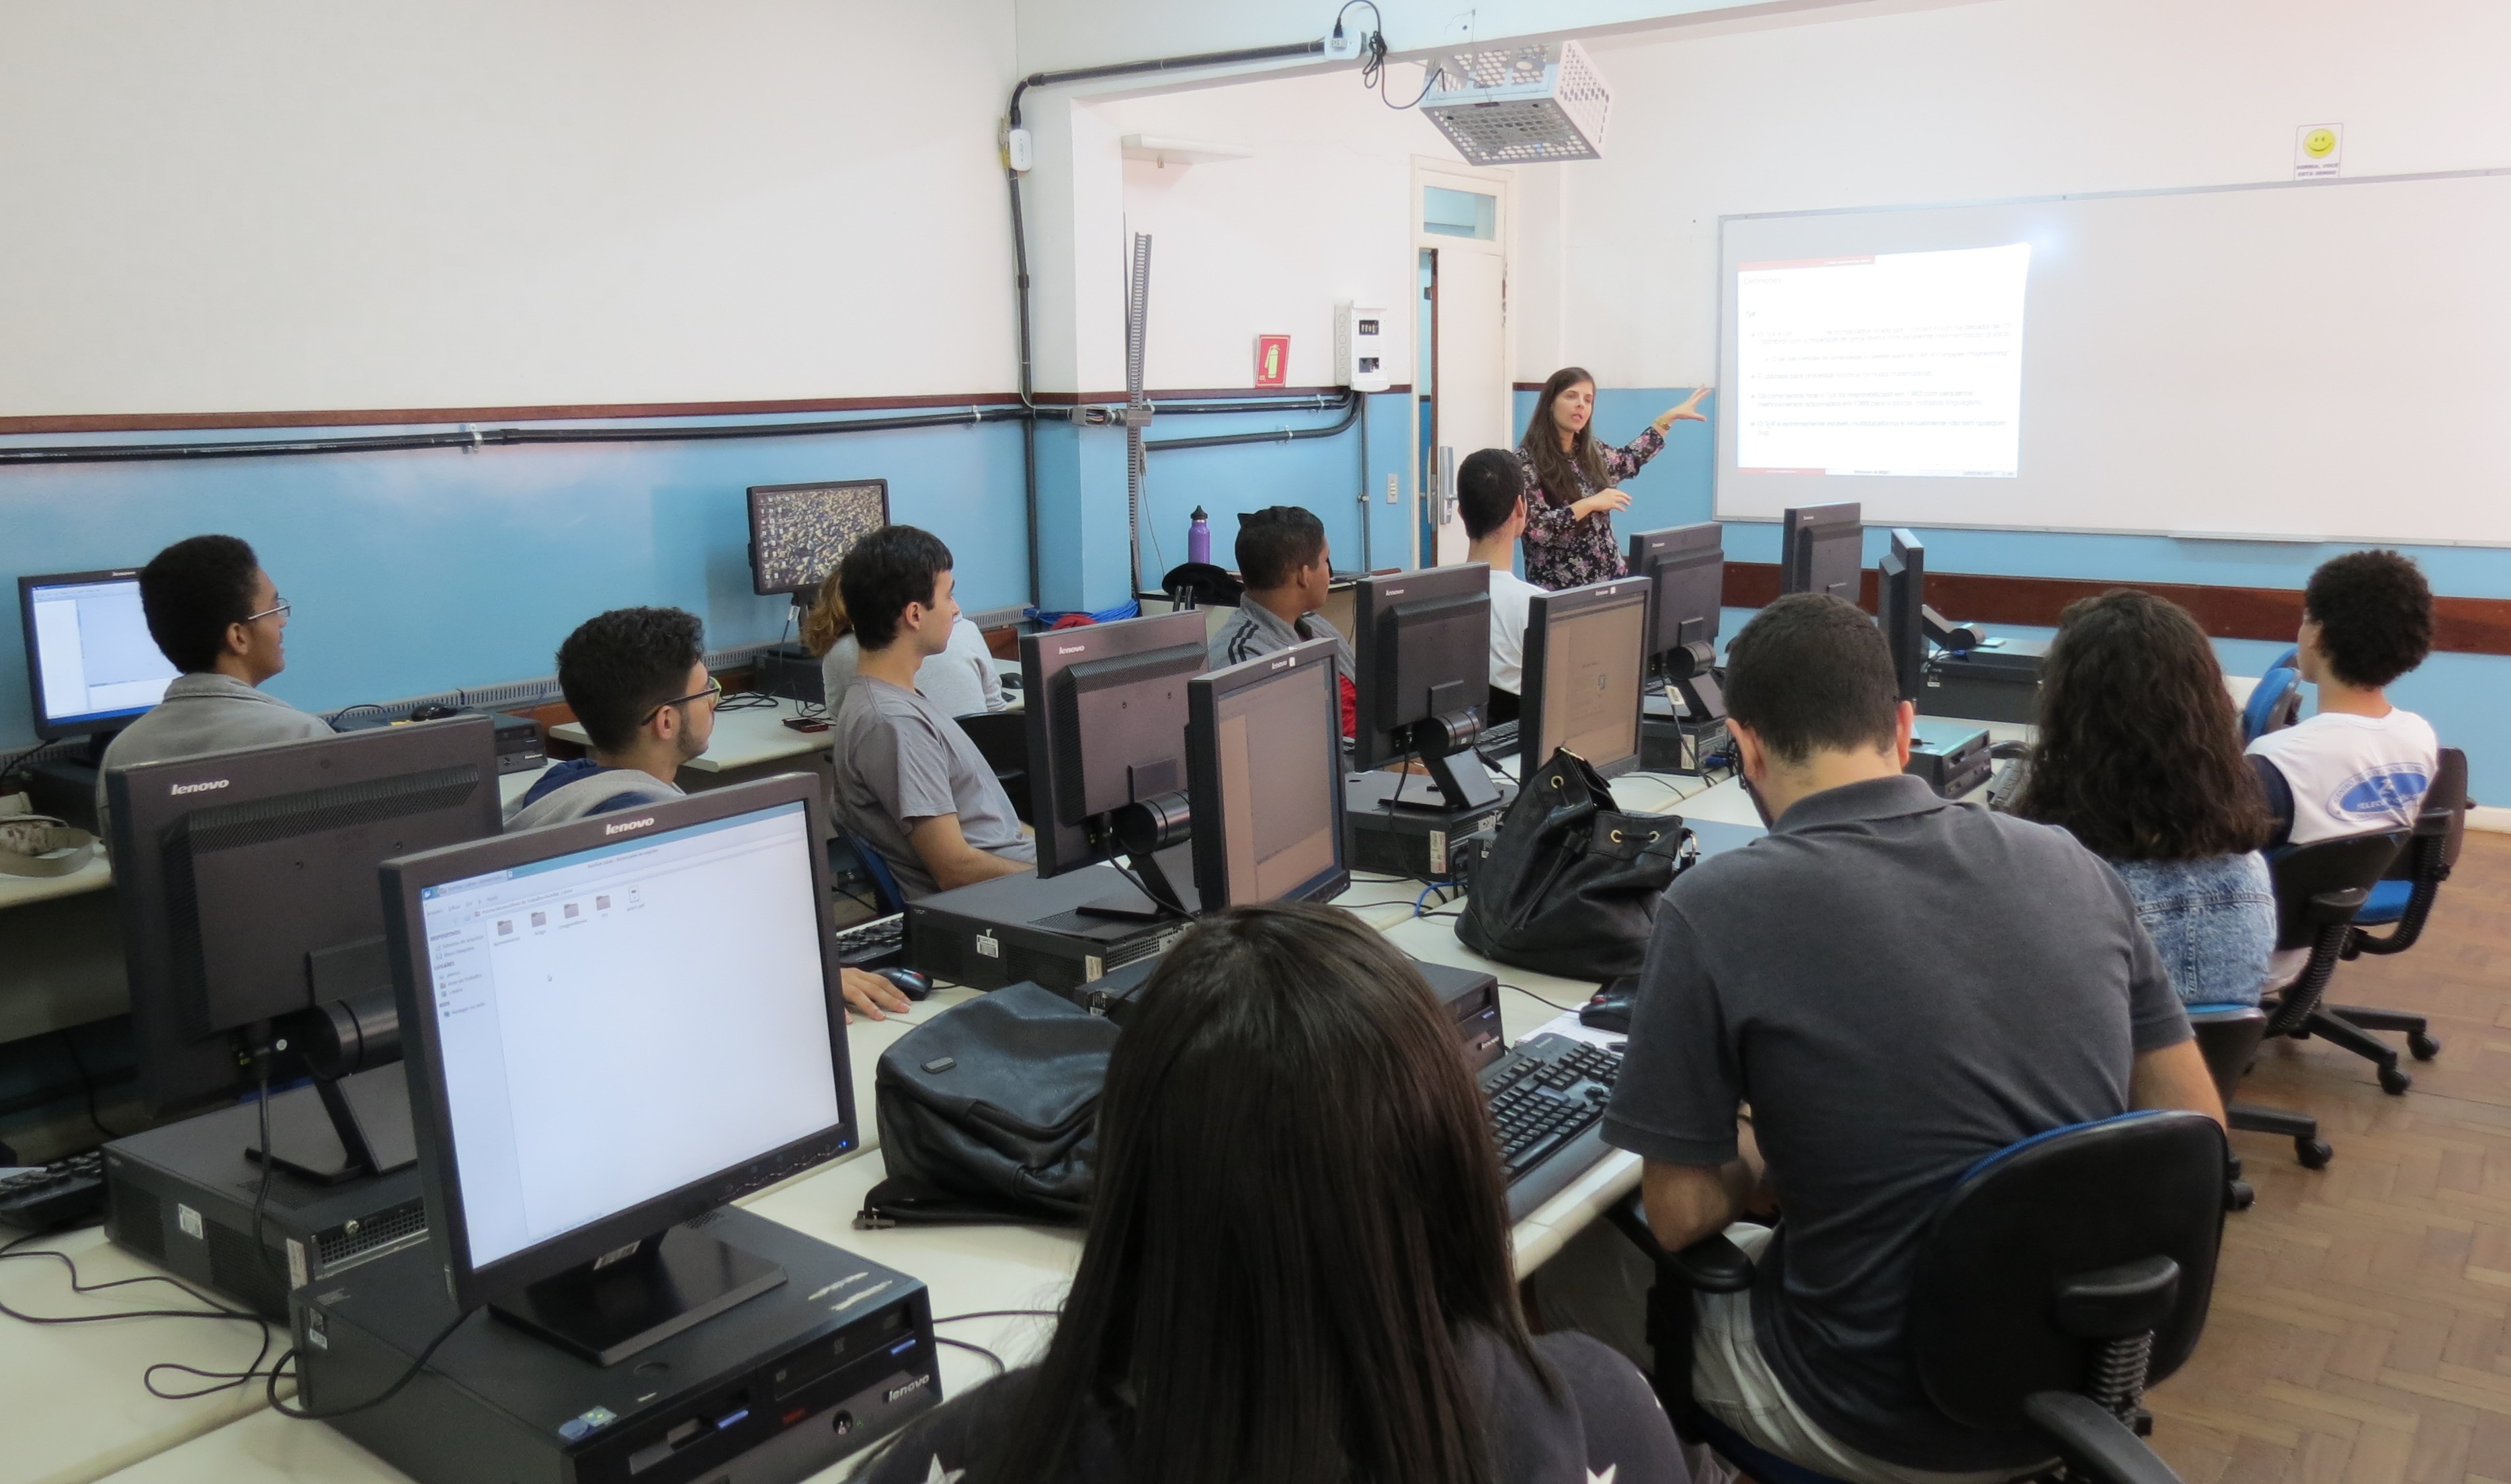 Minicurso "Introdução ao LaTex" é realizado no Laboratório de Informática do campus